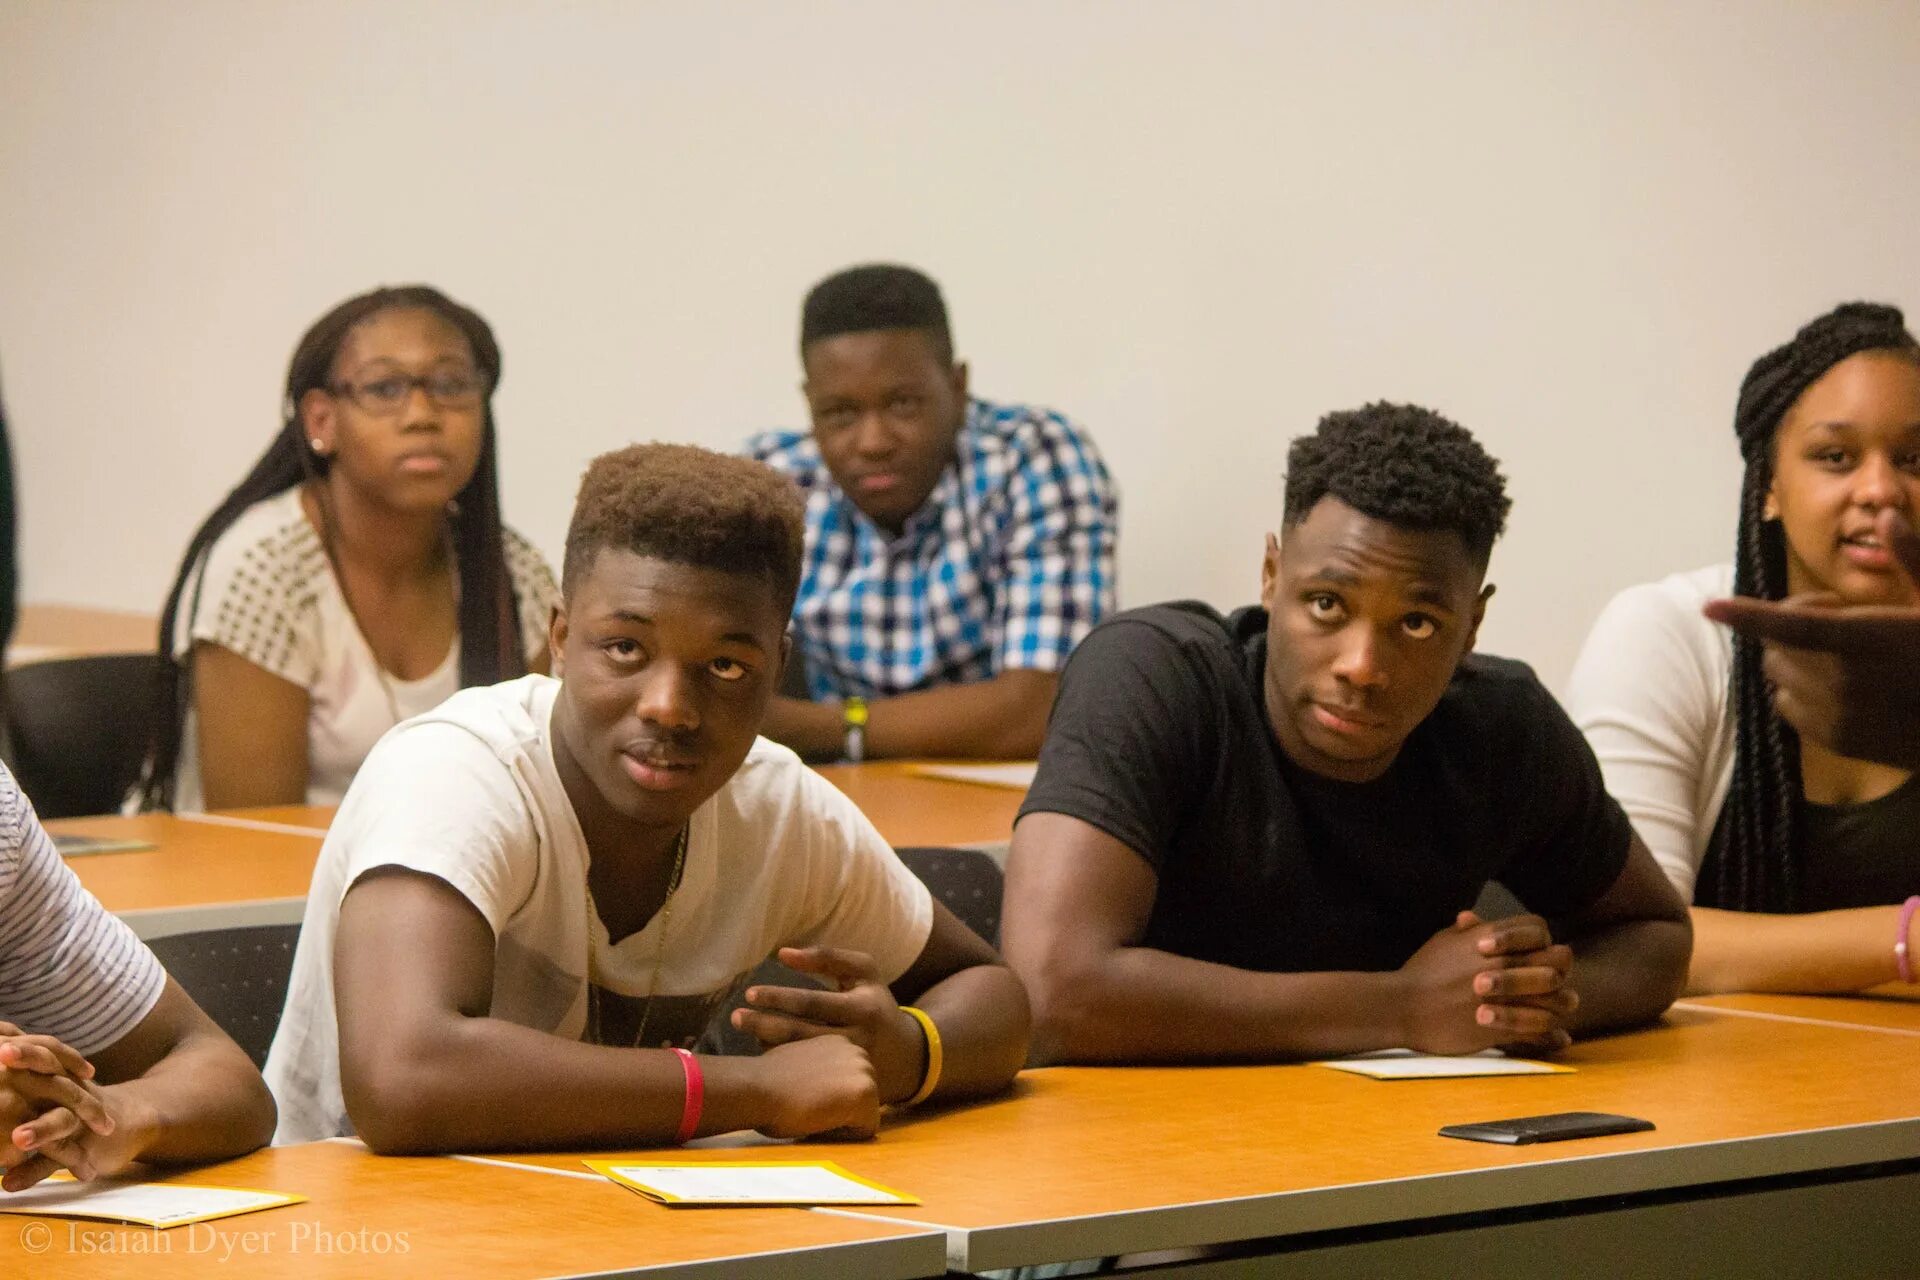 Африкан Американ. Африканские студенты. Афроамериканцы в школе США. Чернокожий студент. Black student